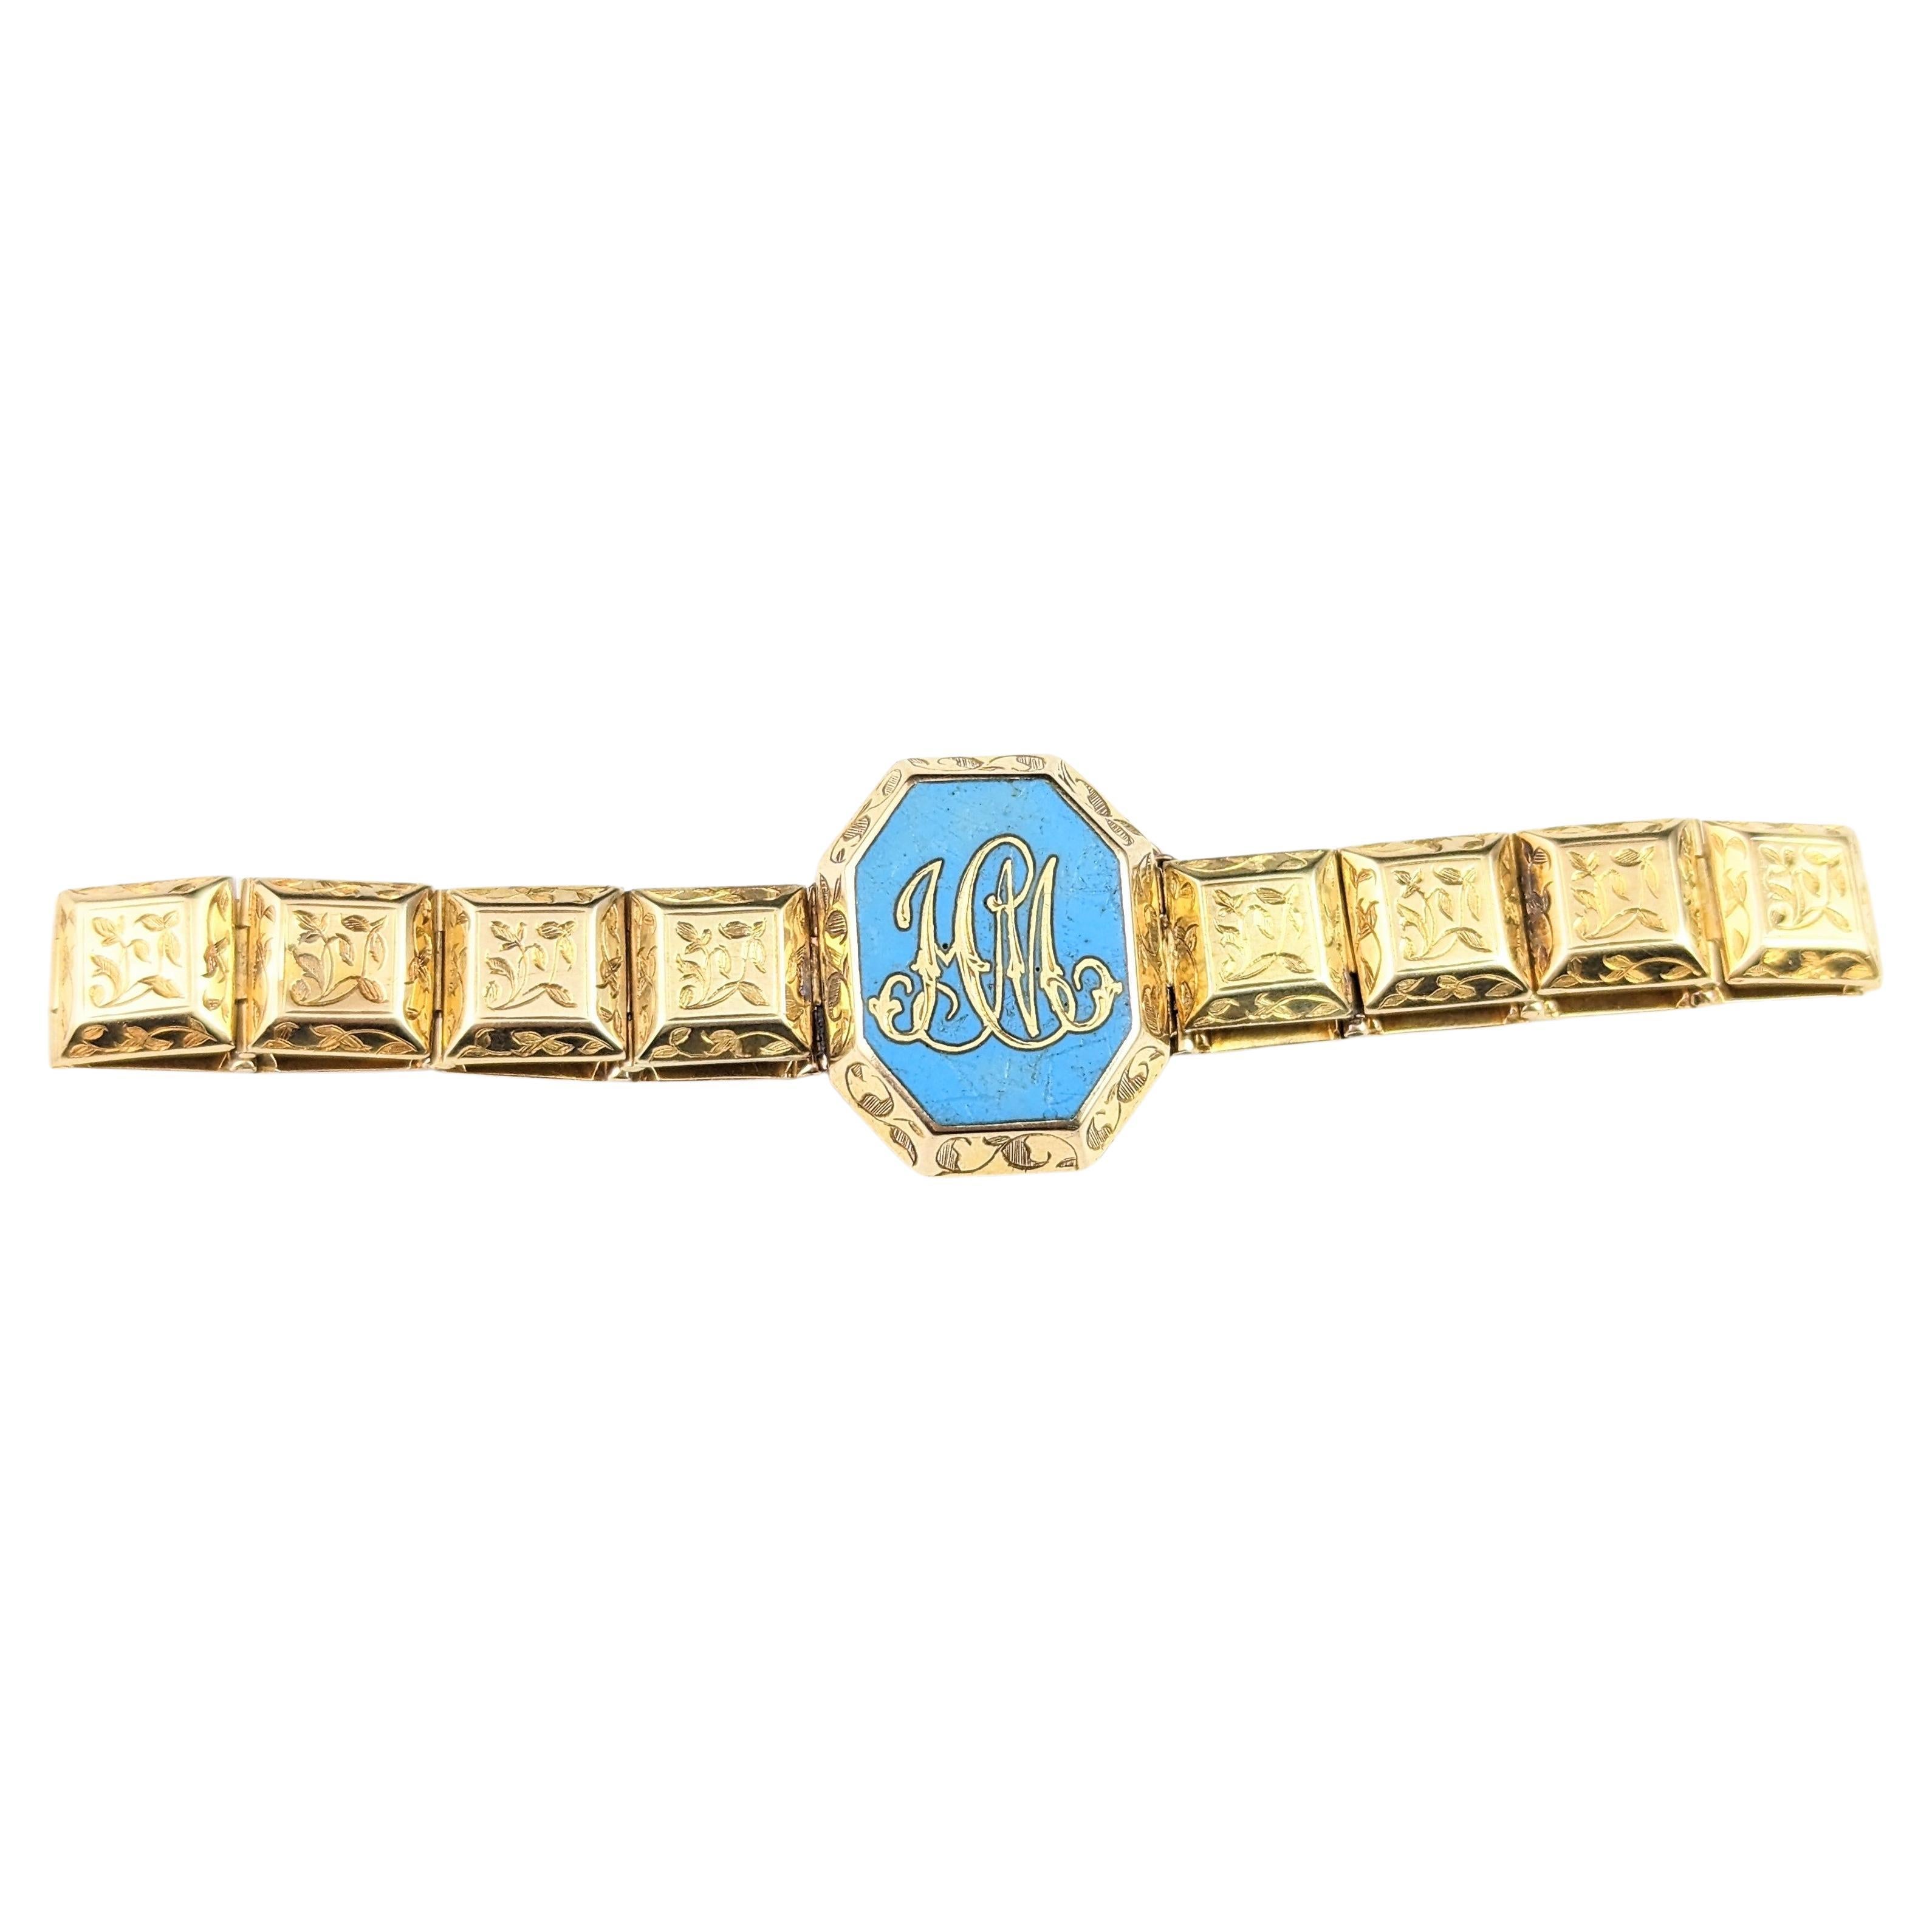 Bracelet de deuil victorien ancien en or 18 carats, émail bleu